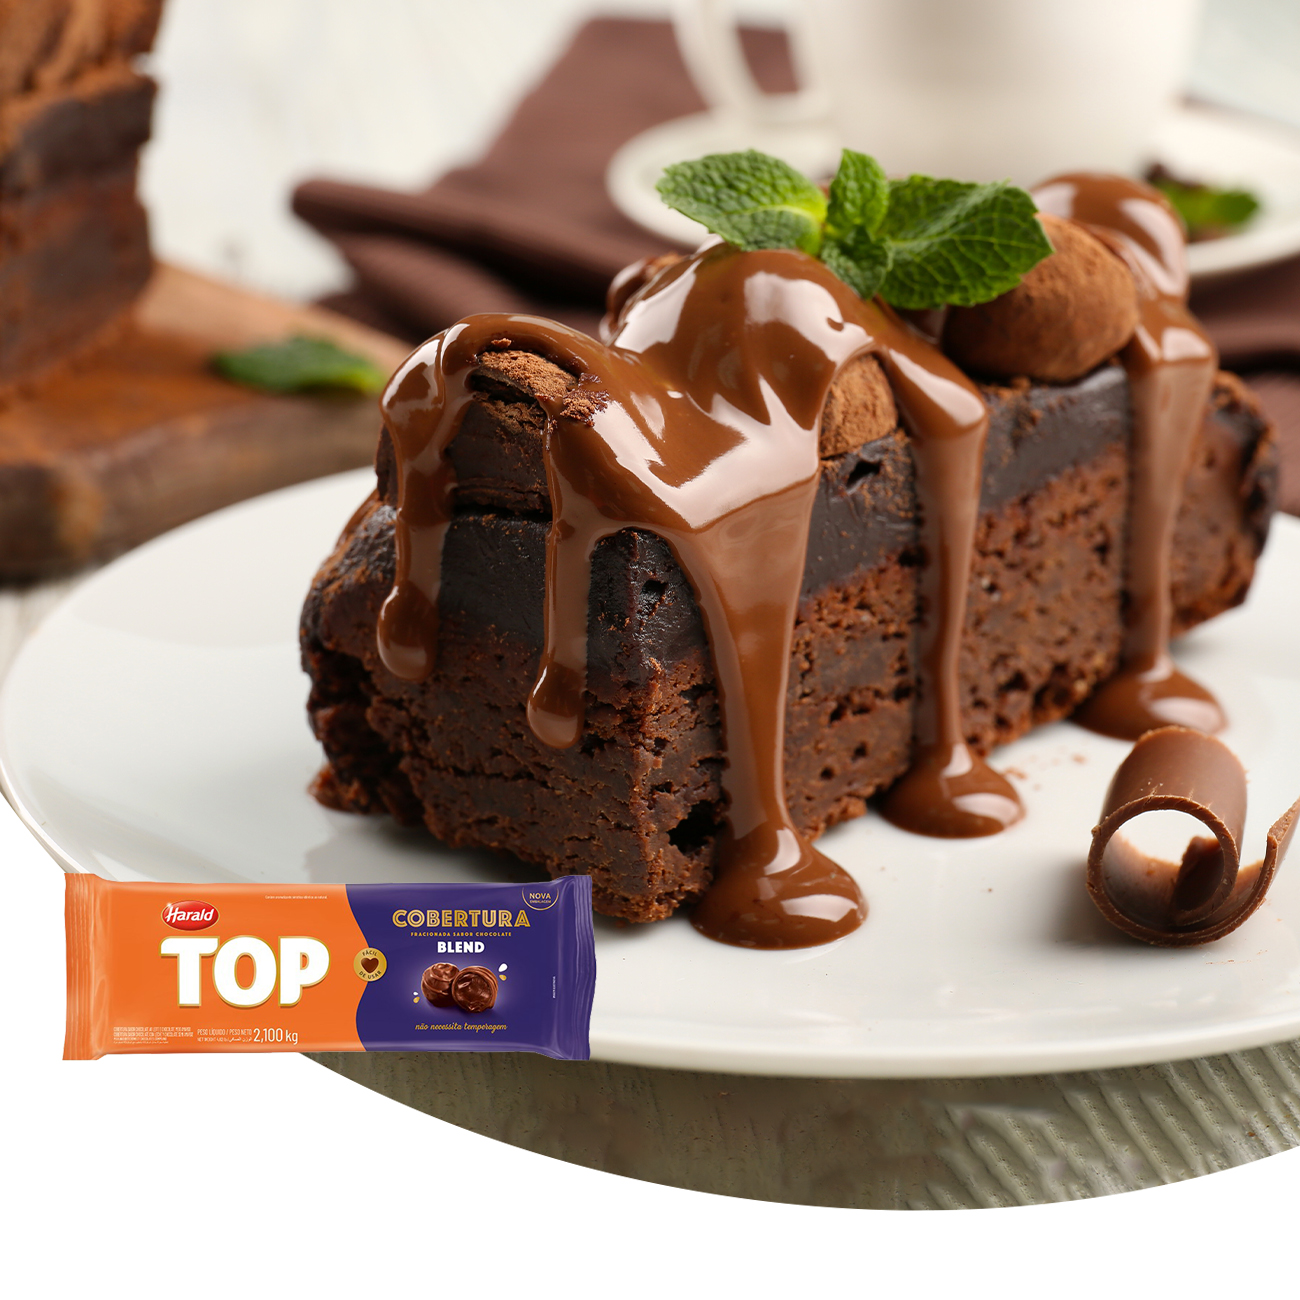 Cobertura de Chocolate em Barra Harald Top Blend 2,1kg